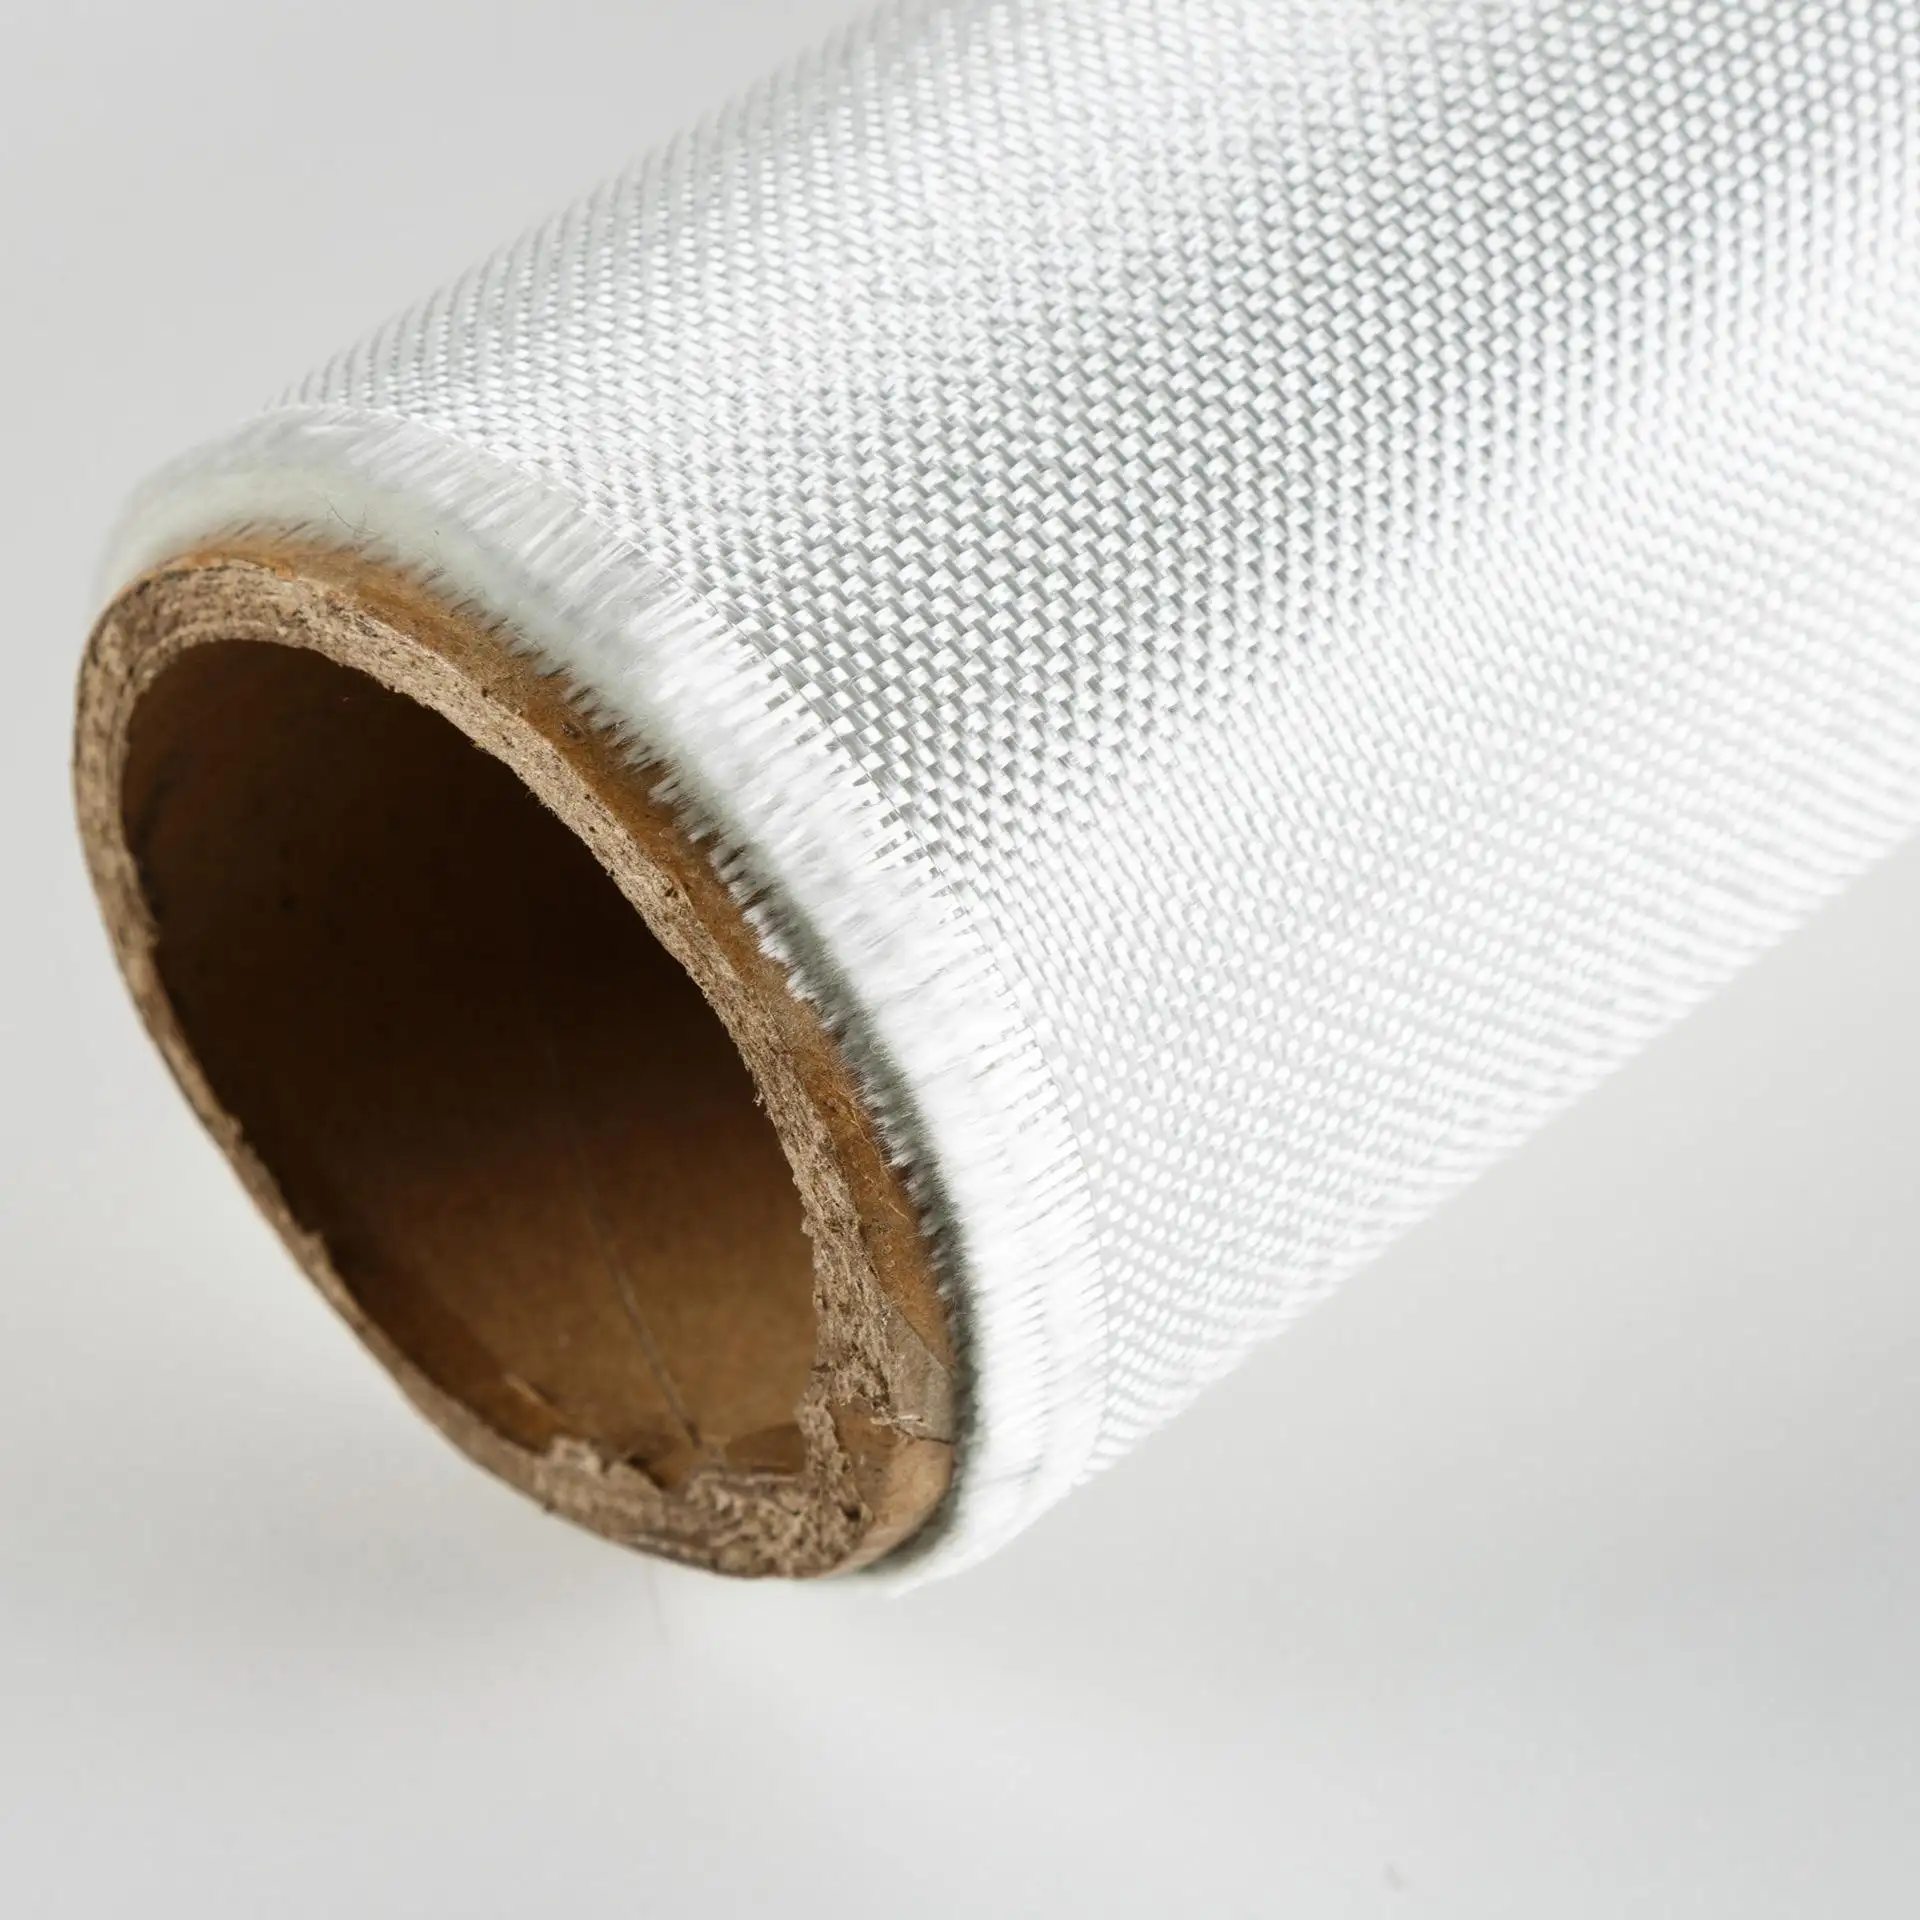 Ruban de tissu en fibre de verre personnalisable résistant aux hautes températures, au feu, tissu ignifuge